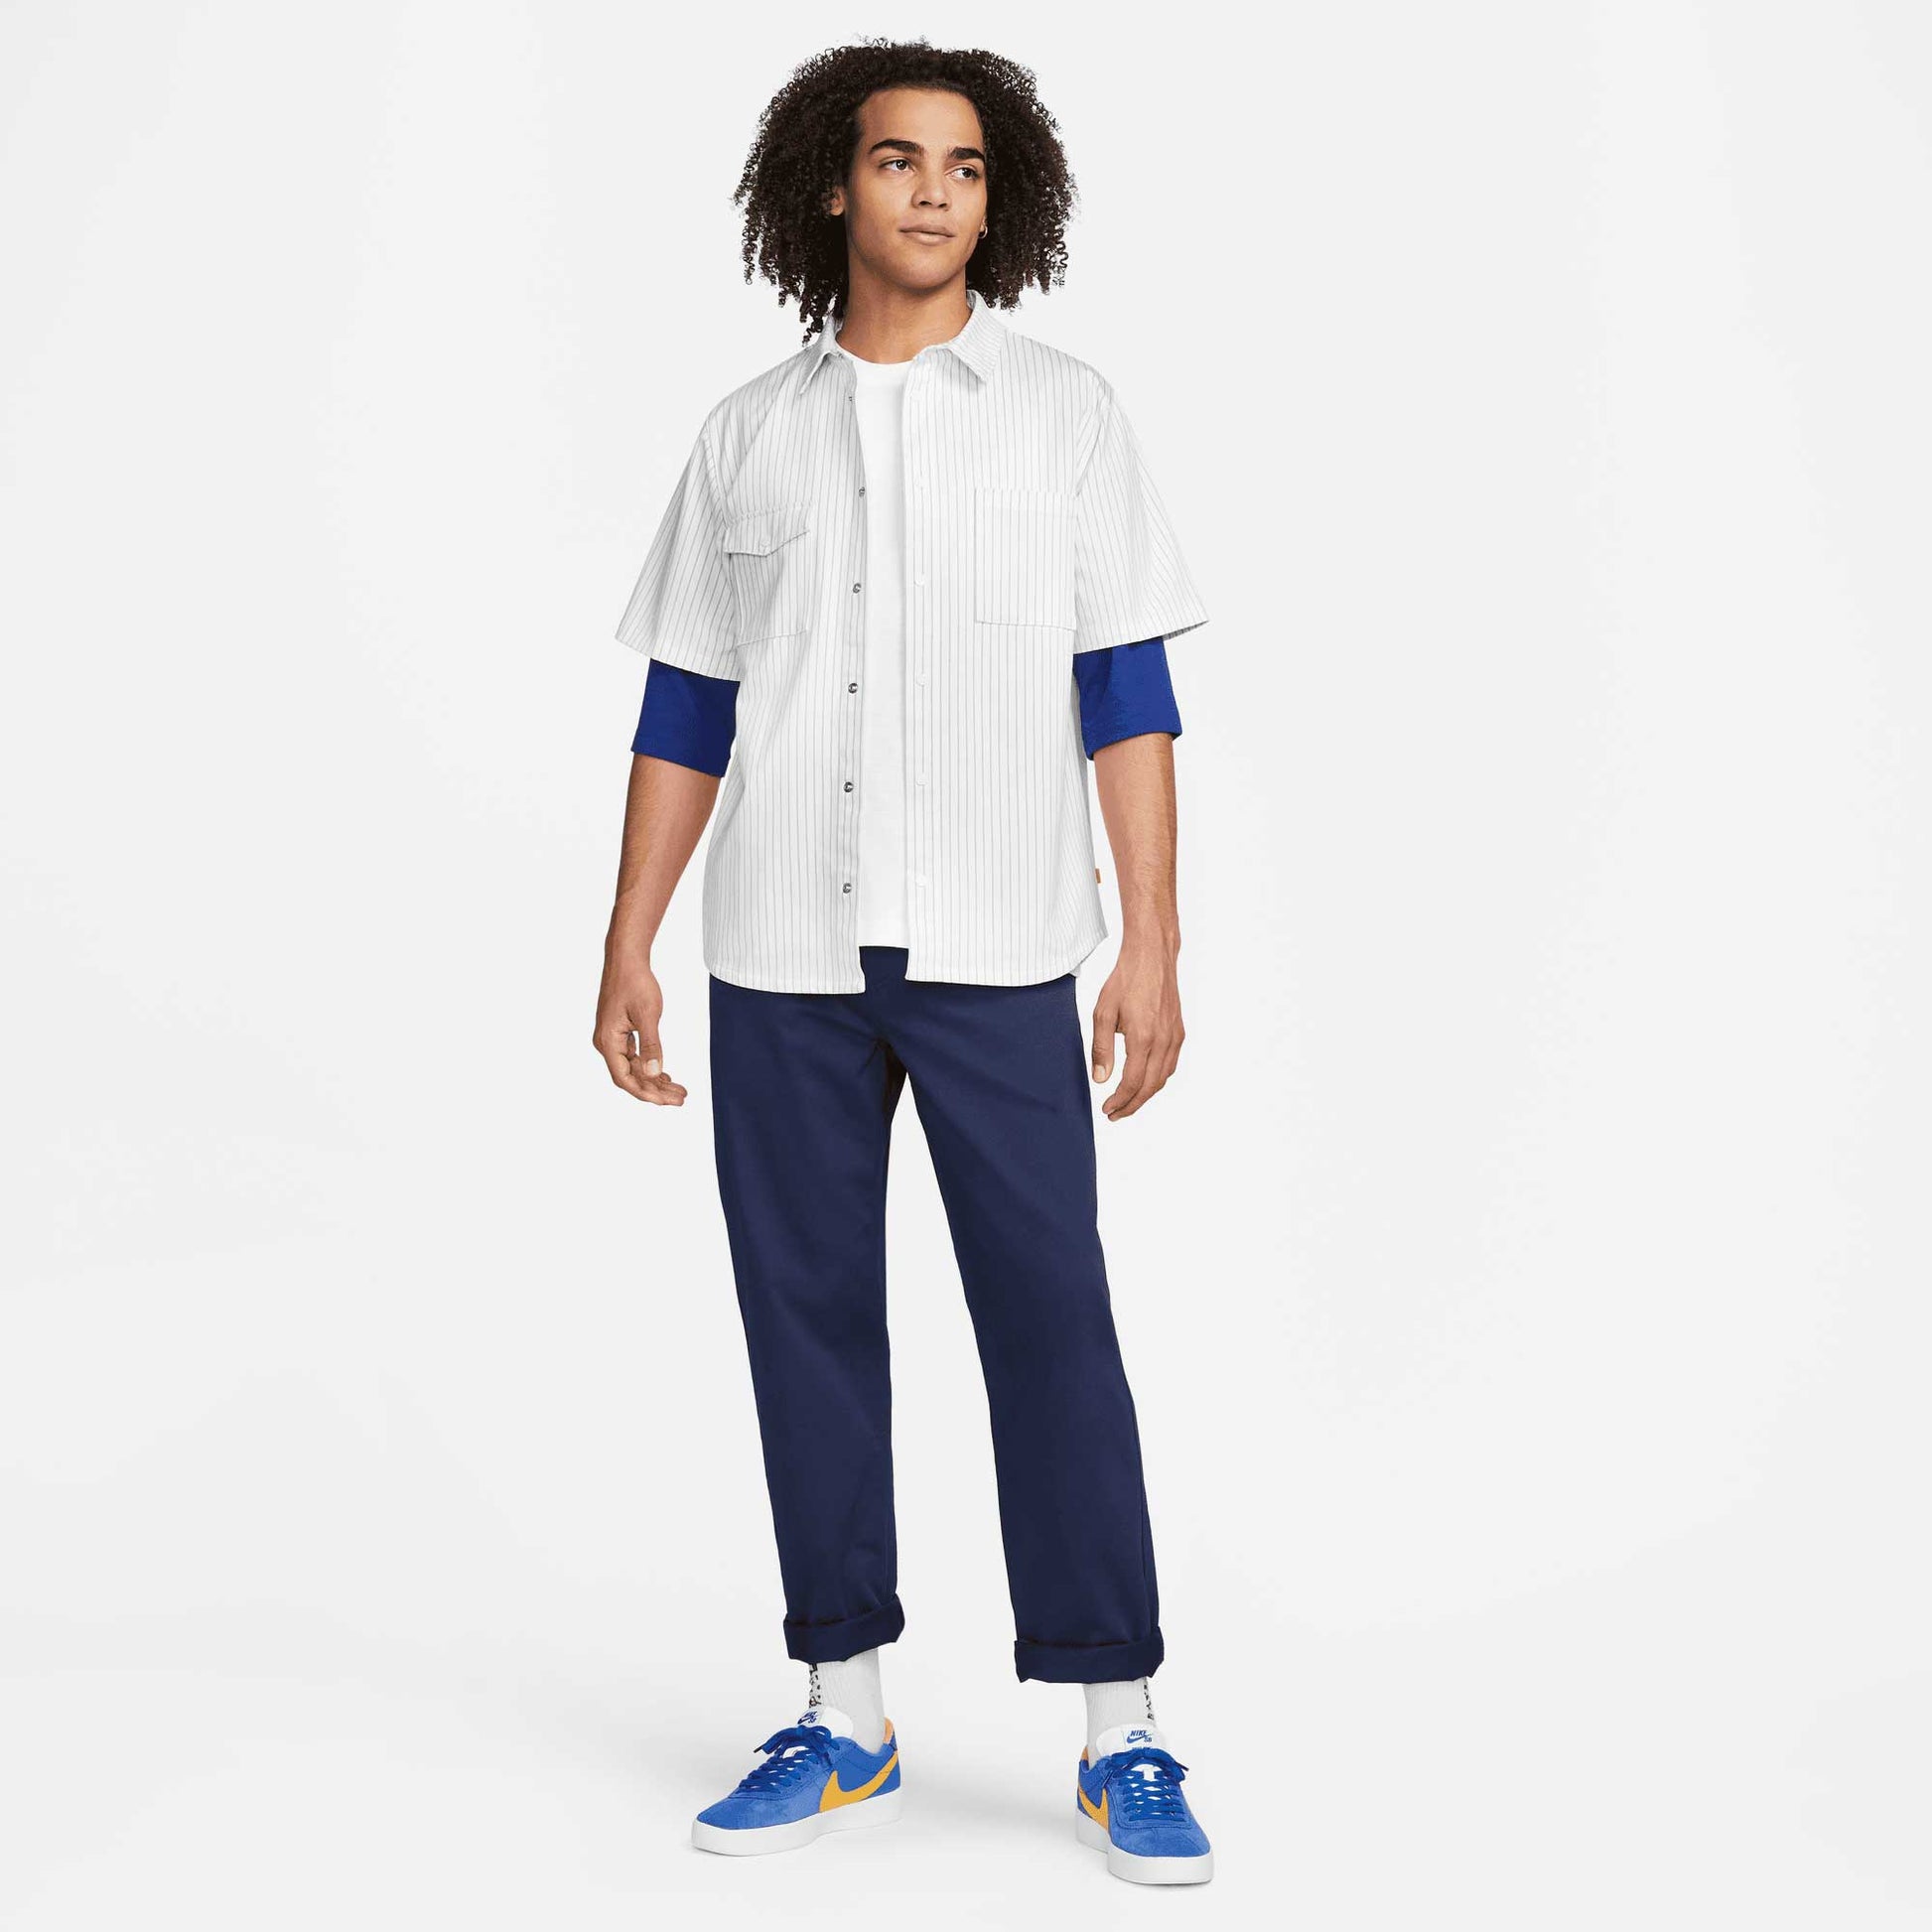 Nike SB Raglan Skate T-Shirt, white/deep royal blue - Tiki Room Skateboards - 5